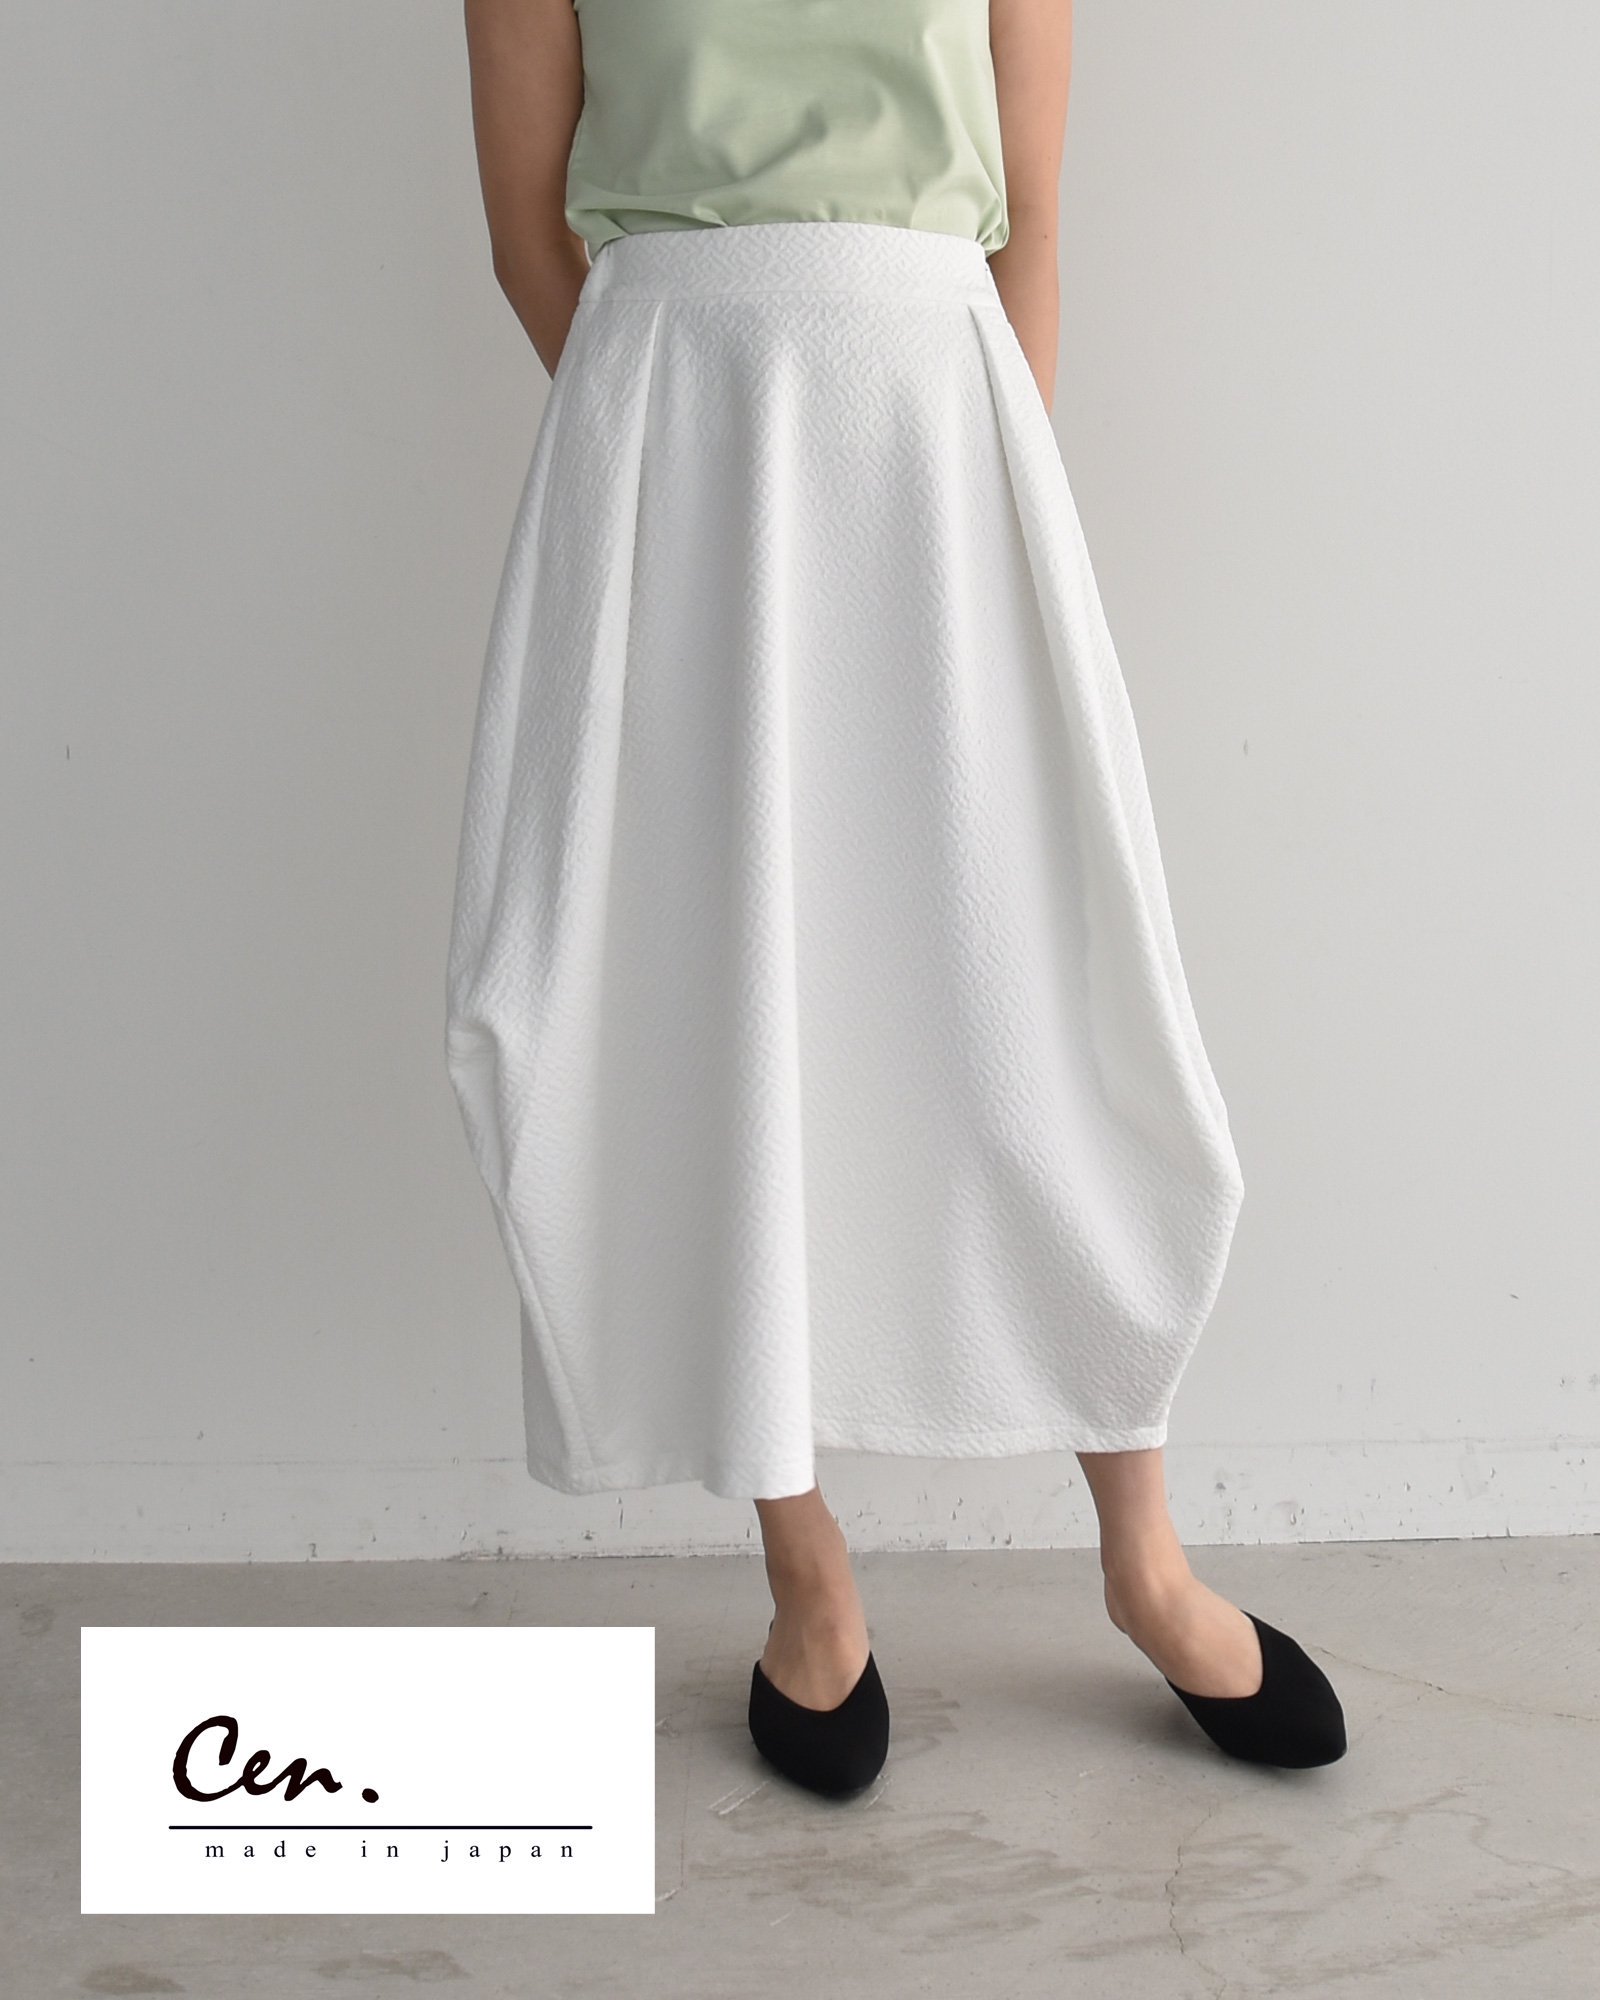 海外最新 セン CEN. プリーツスカート 日本製 ホワイト色 スカート 